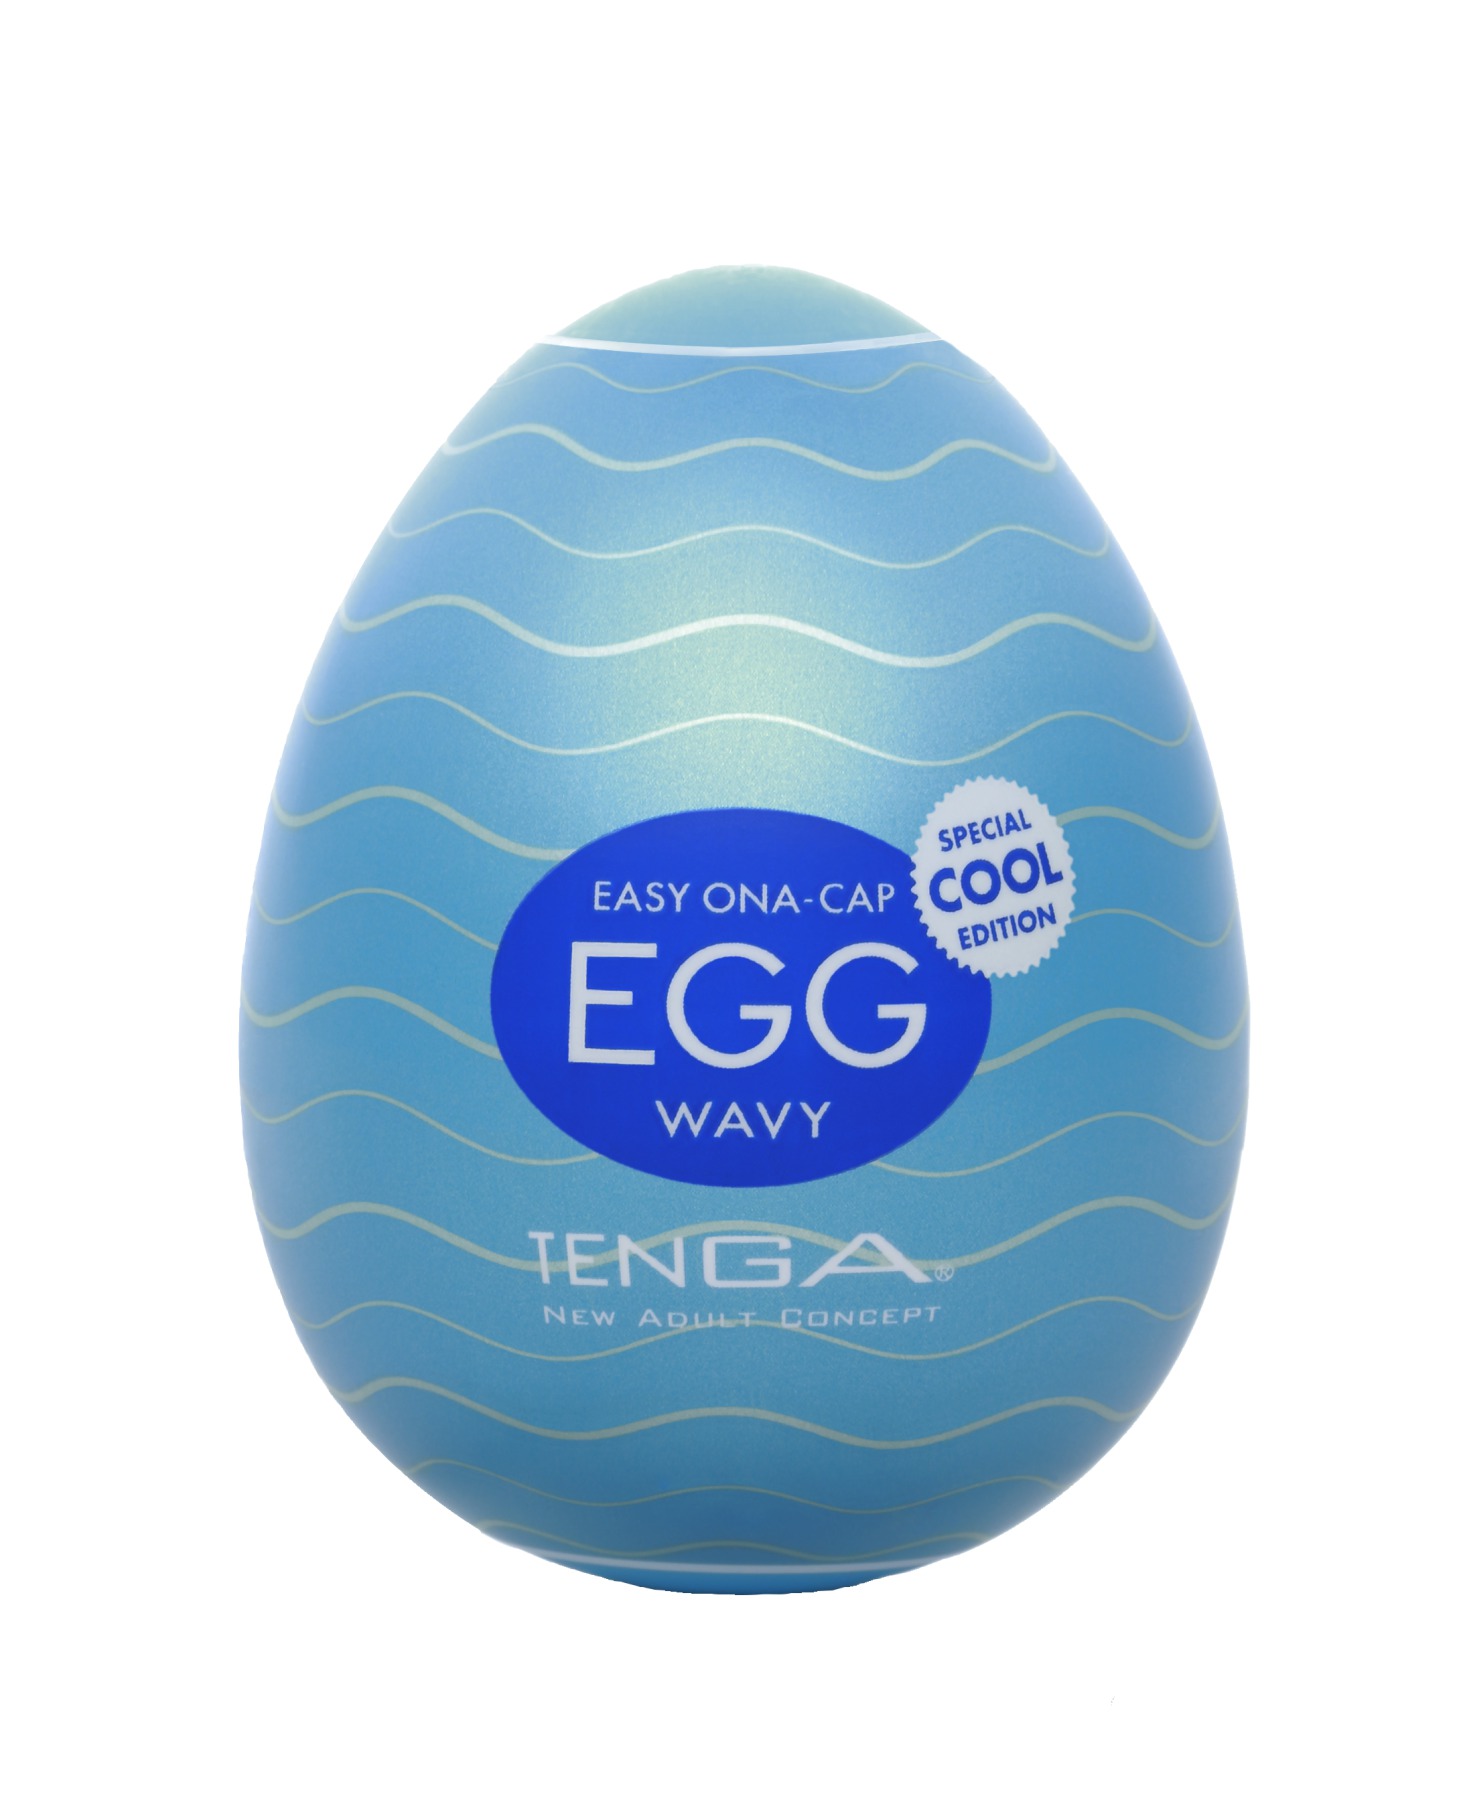  Tenga Egg COOL